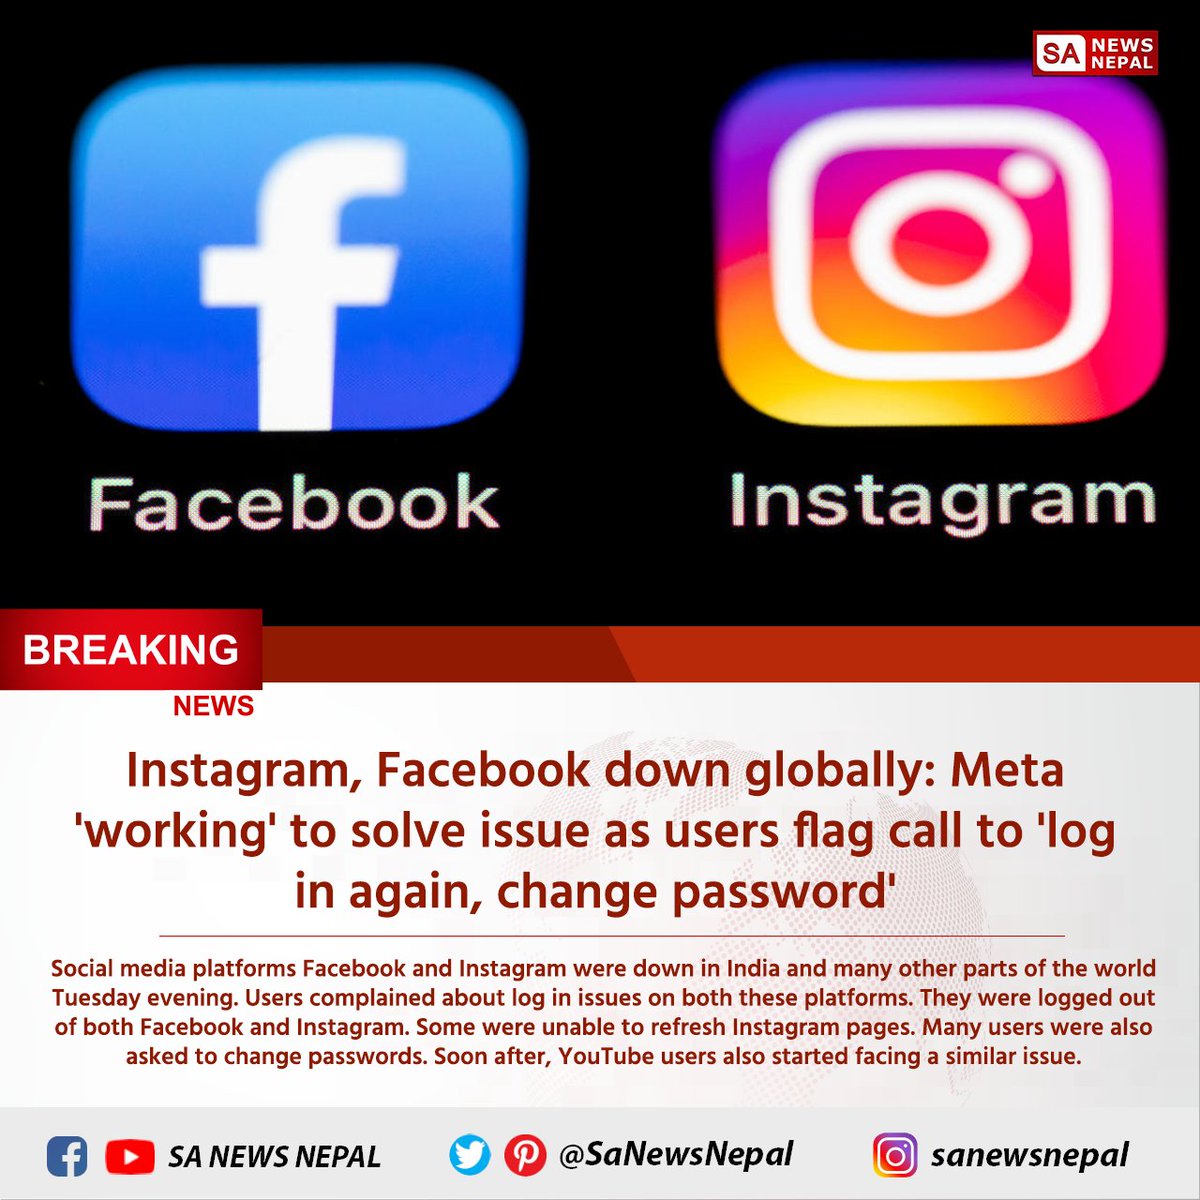 #sanewsnepal #facebookdown #instagramdown #meta Facebook, Instagram, Messenger down: Meta platforms suddenly stop working in huge outage